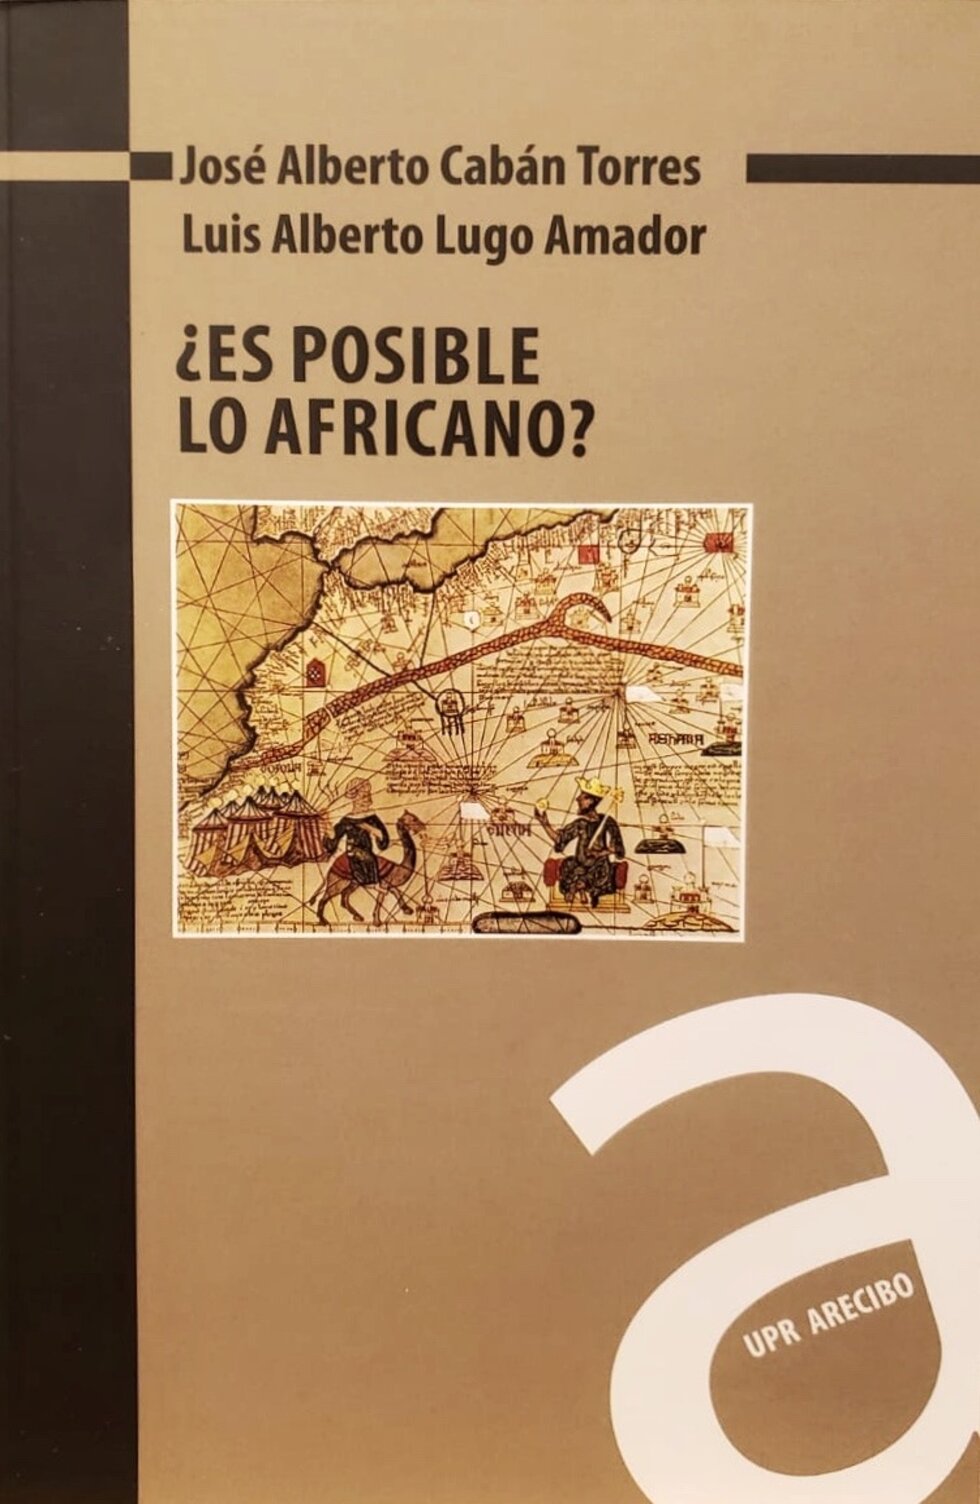 ¿ES POSIBLE LO AFRICANO? - José Alberto Cabán Torres y Luis Alberto Lugo Amador